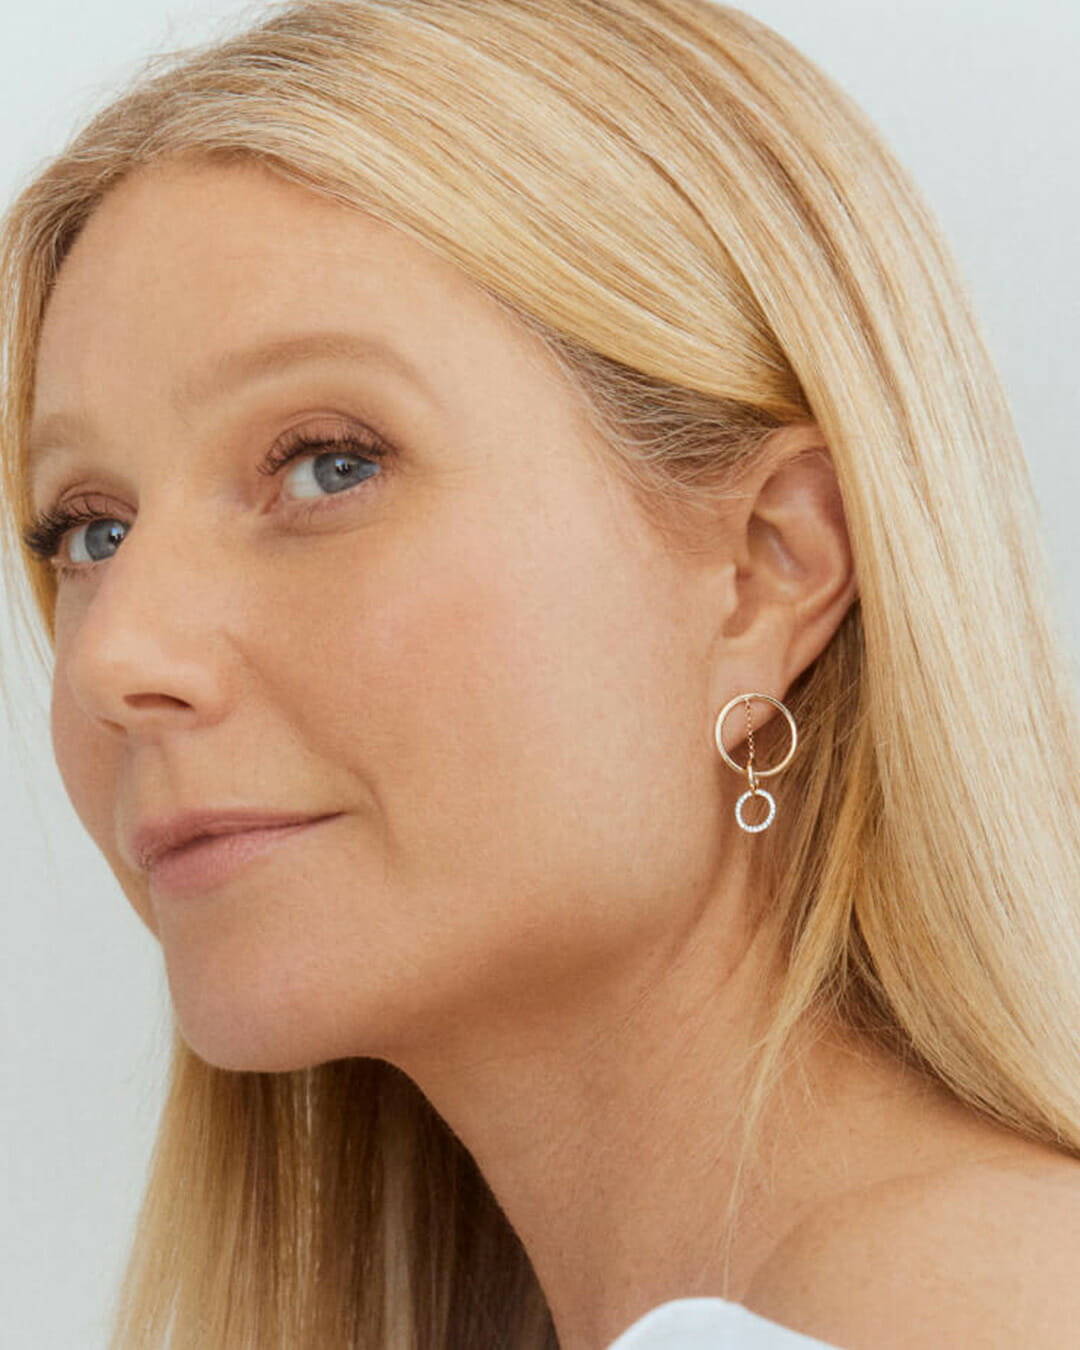 Gwyneth Paltrow wearing G Label Jewelry earrings